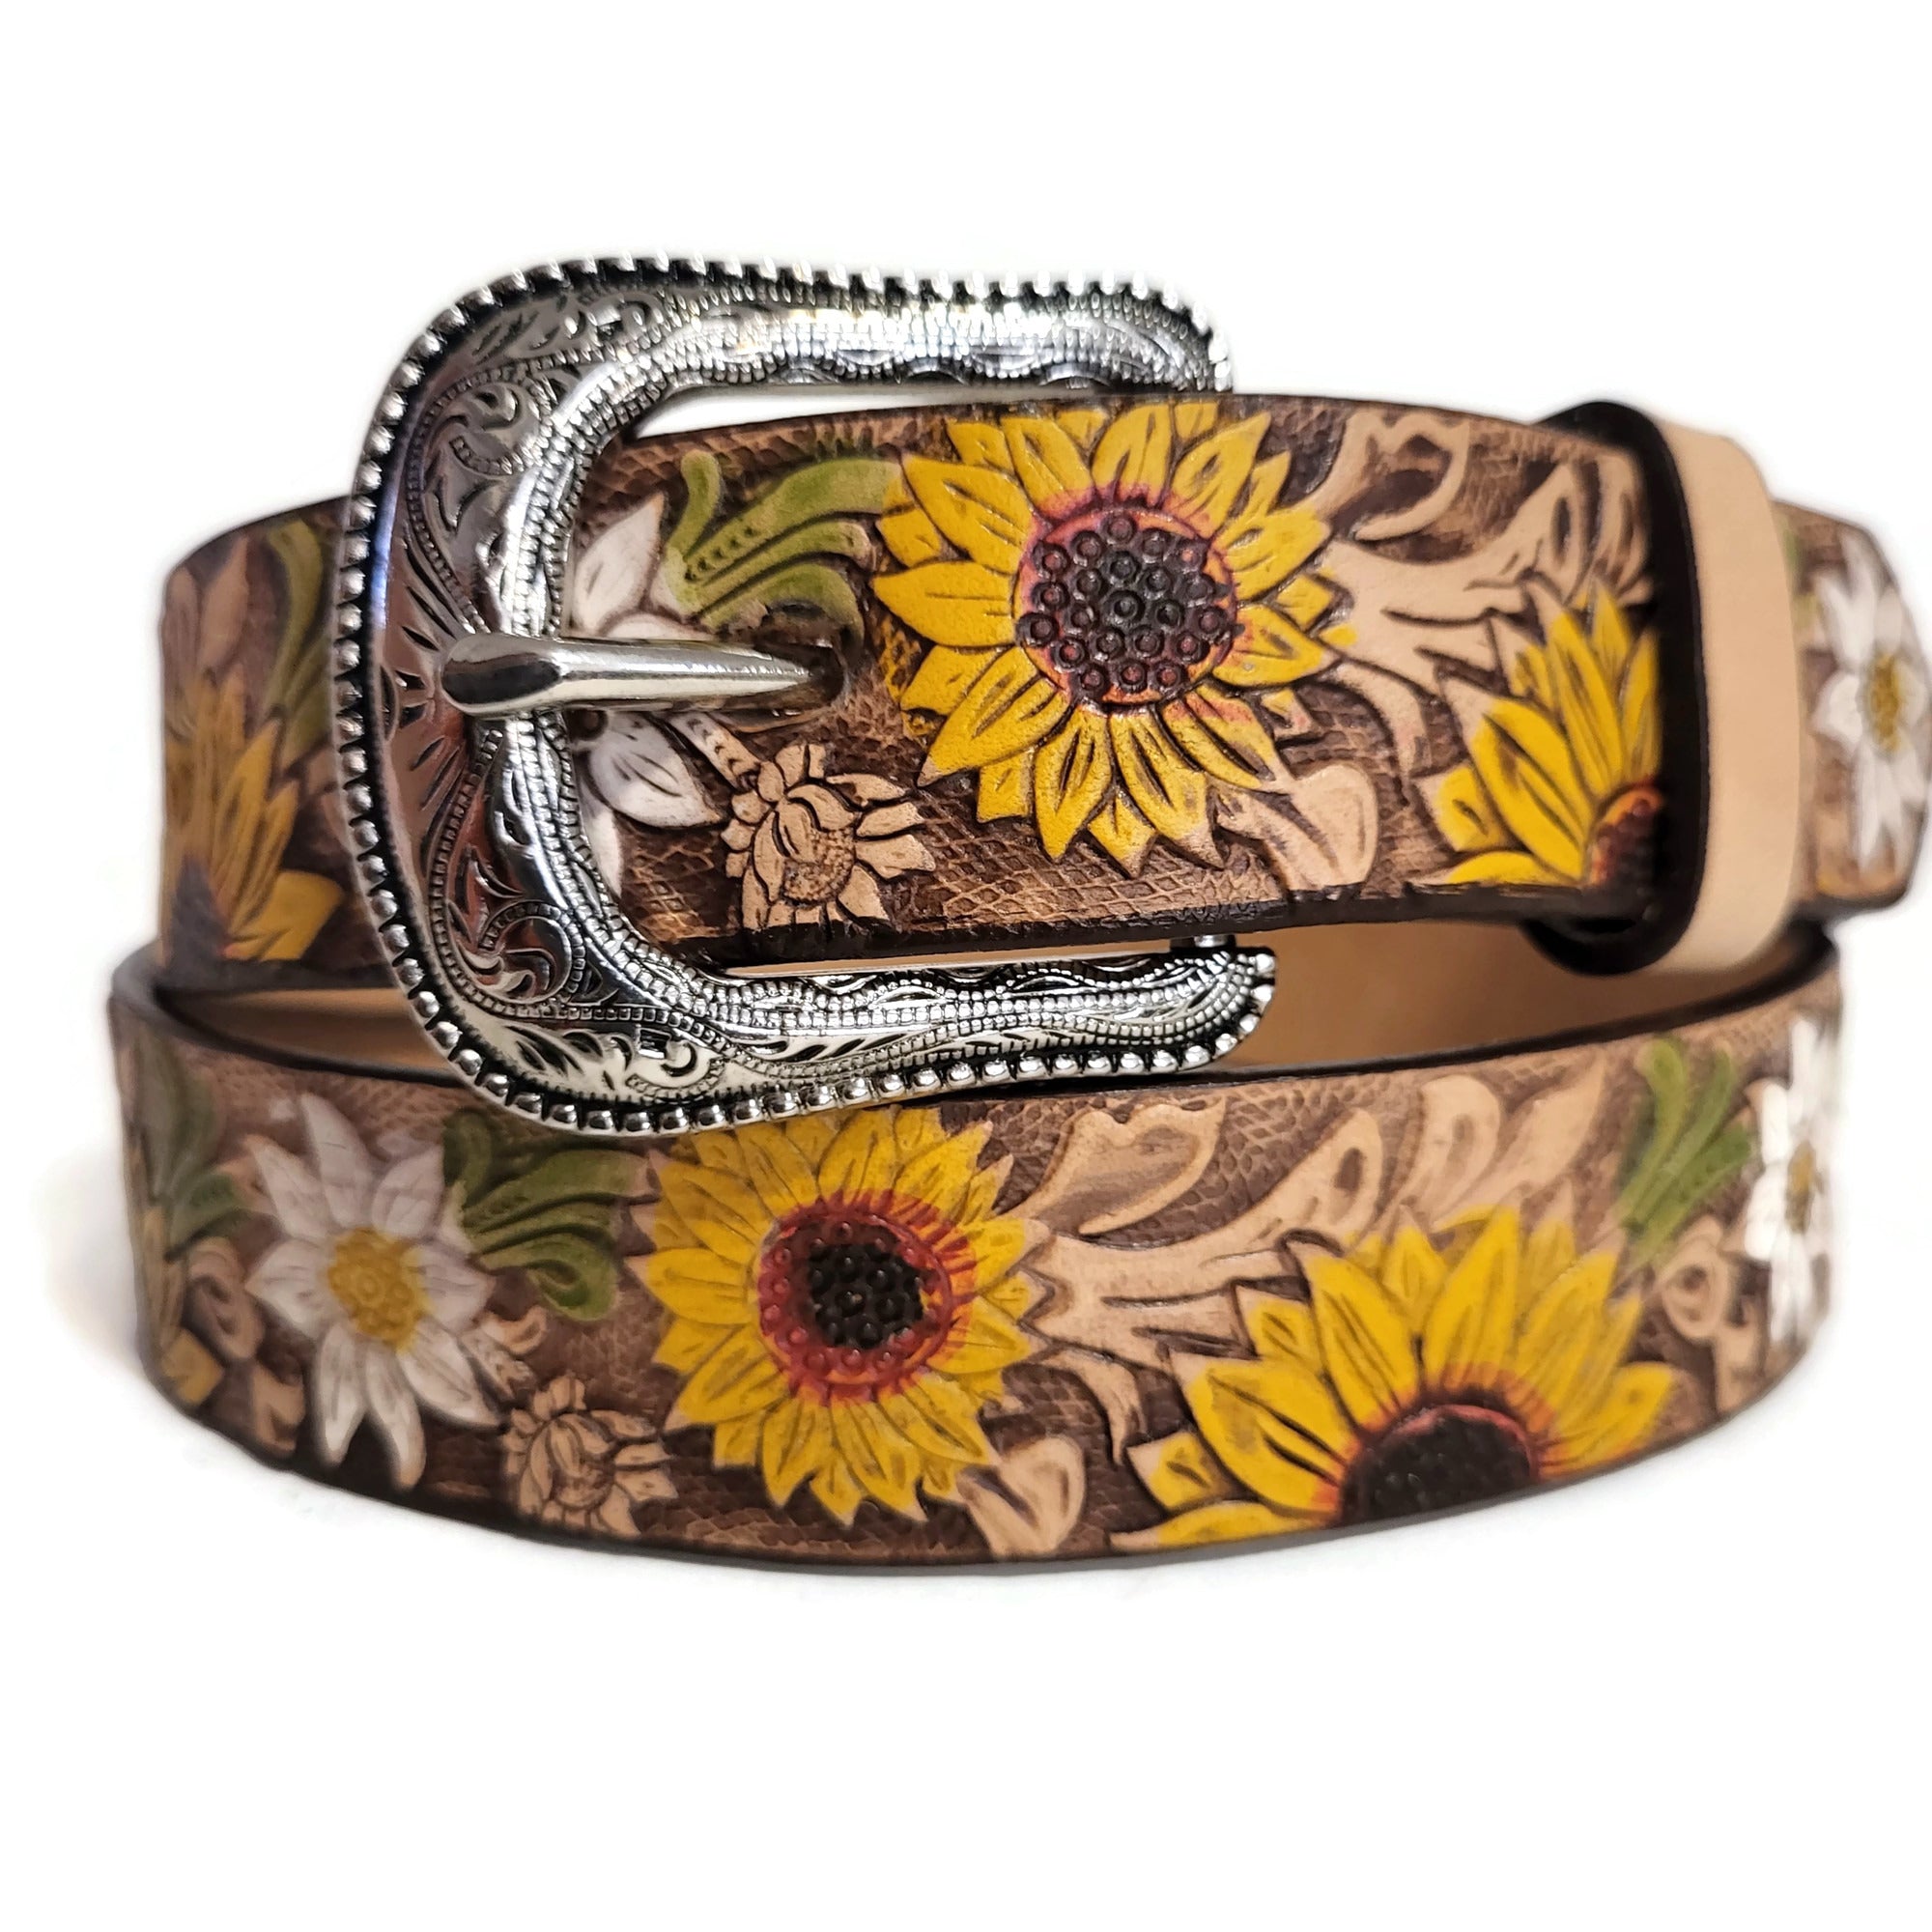 Leather belt for girls, handmade, sunflower belt, brown belt, gift for girls